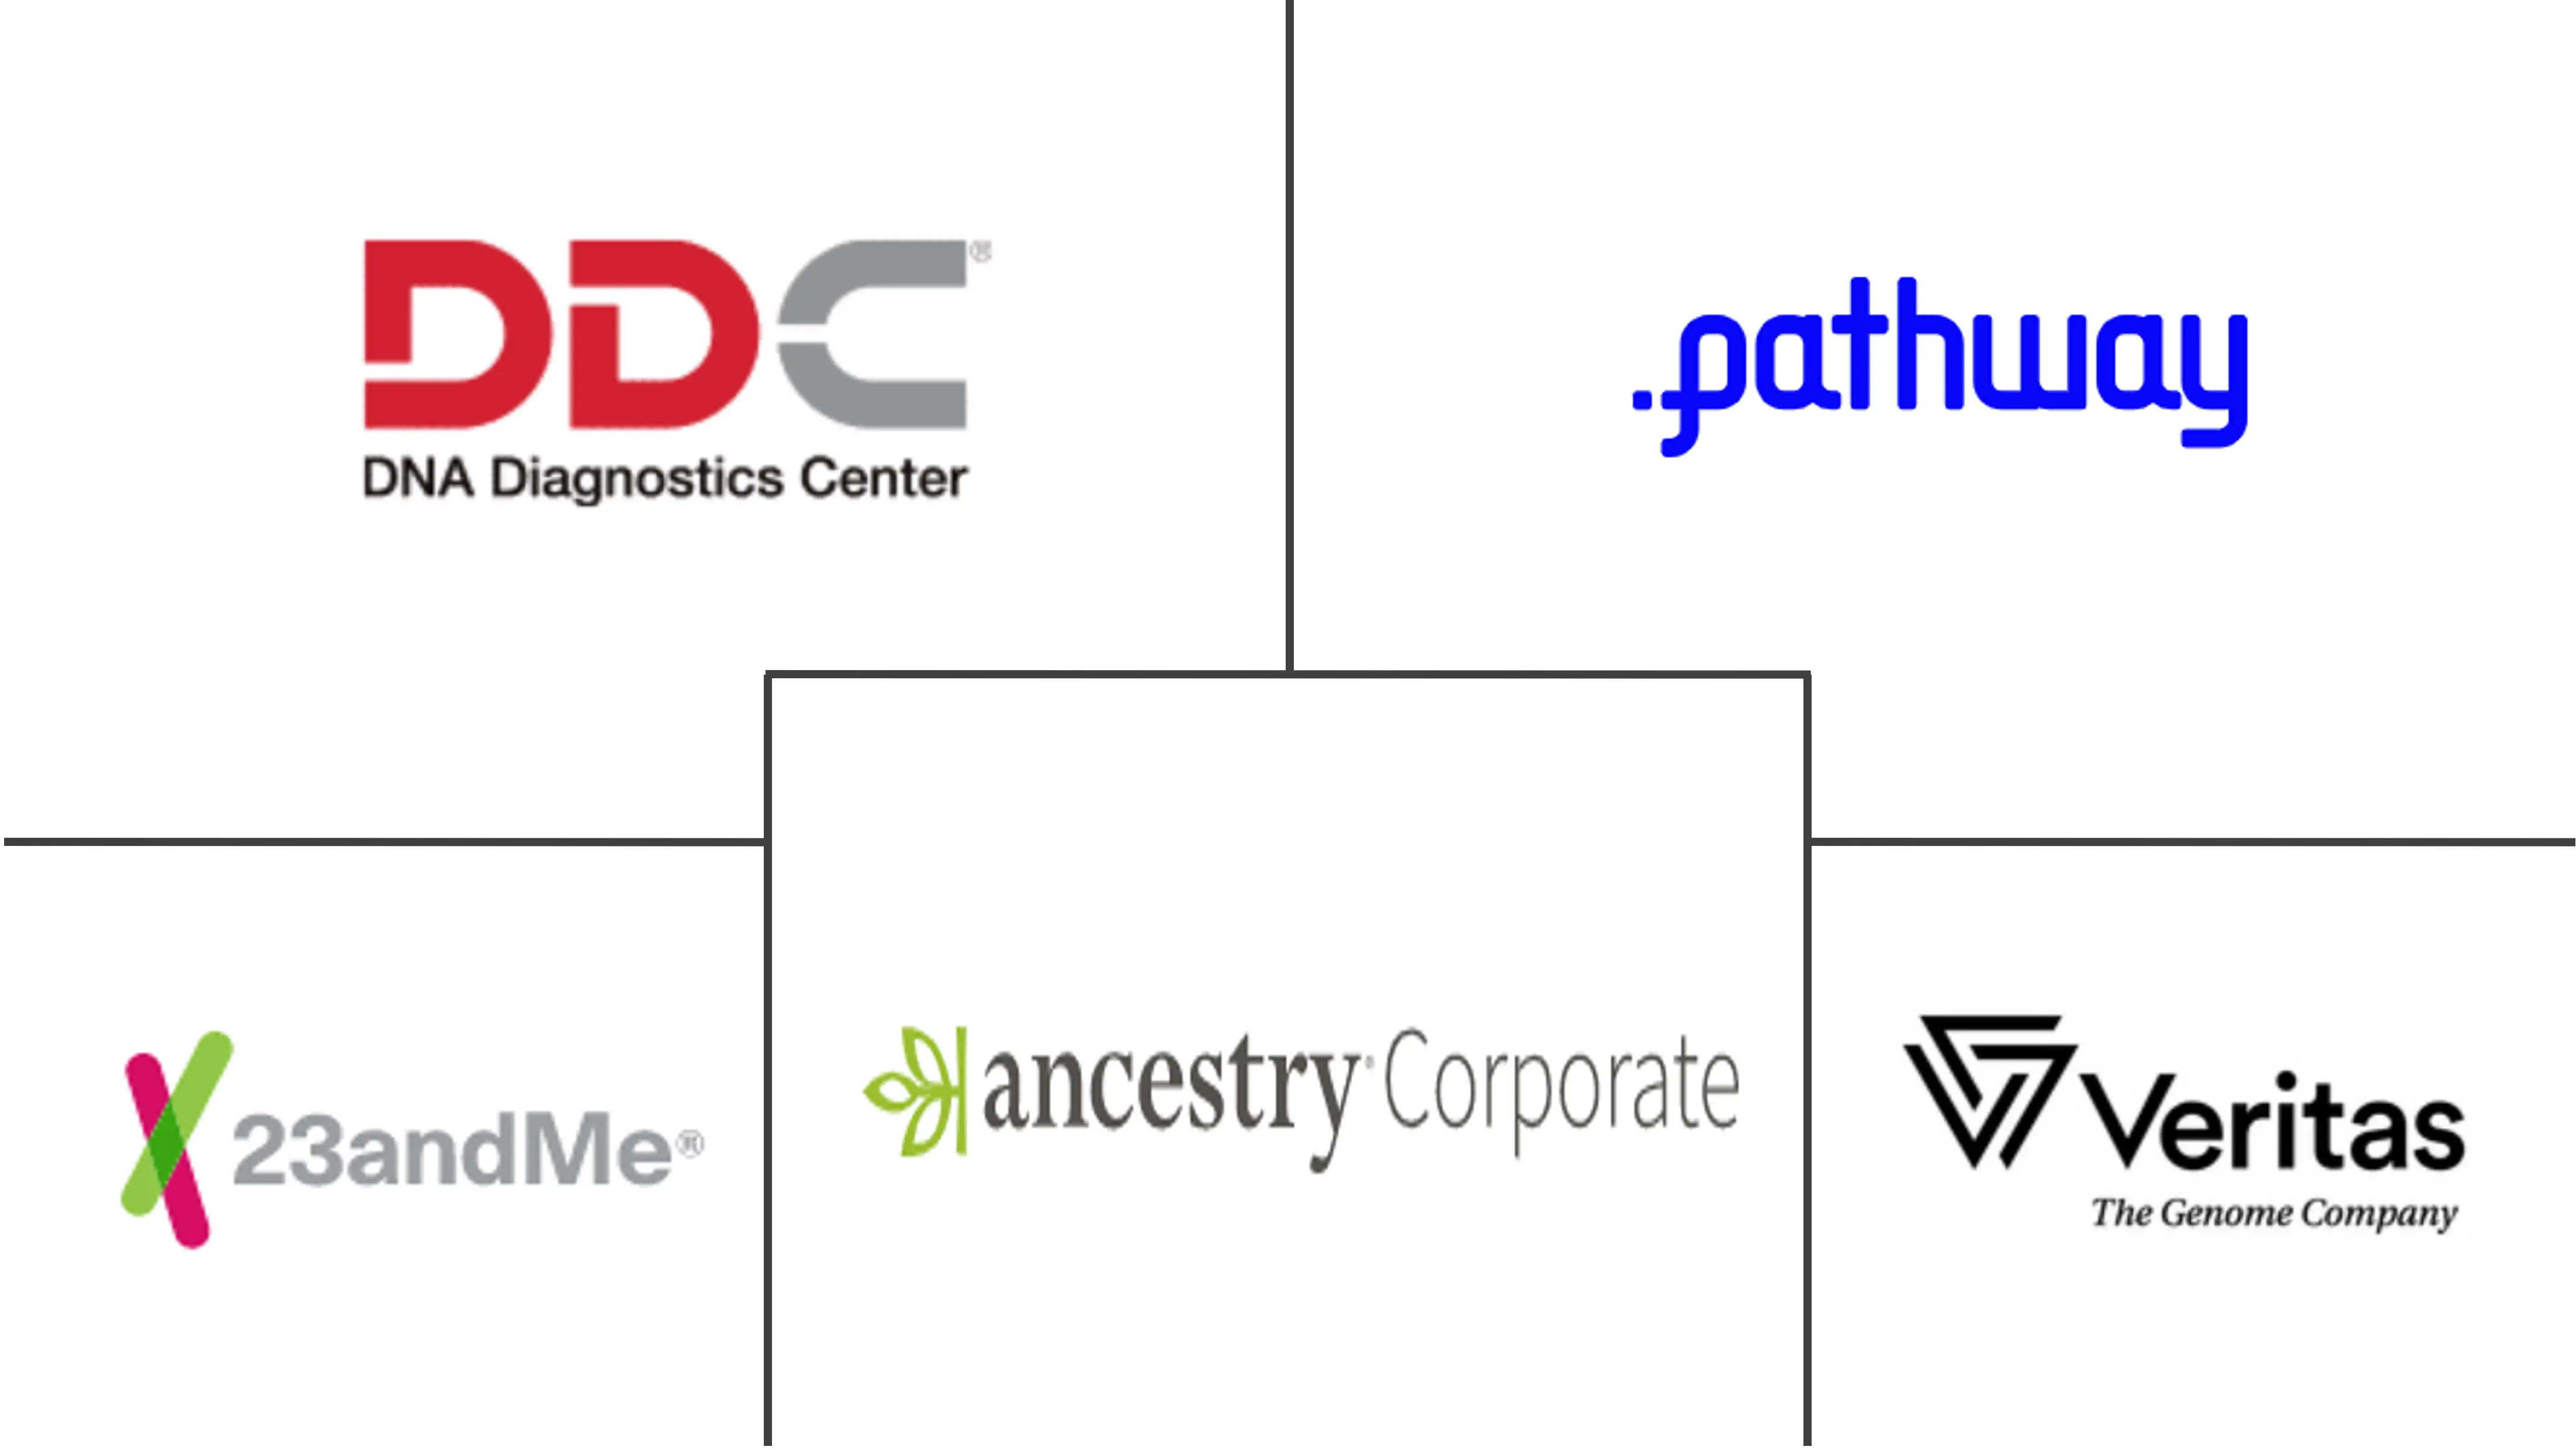 全球 DTC（直接面向消费者）DNA 测试套件市场